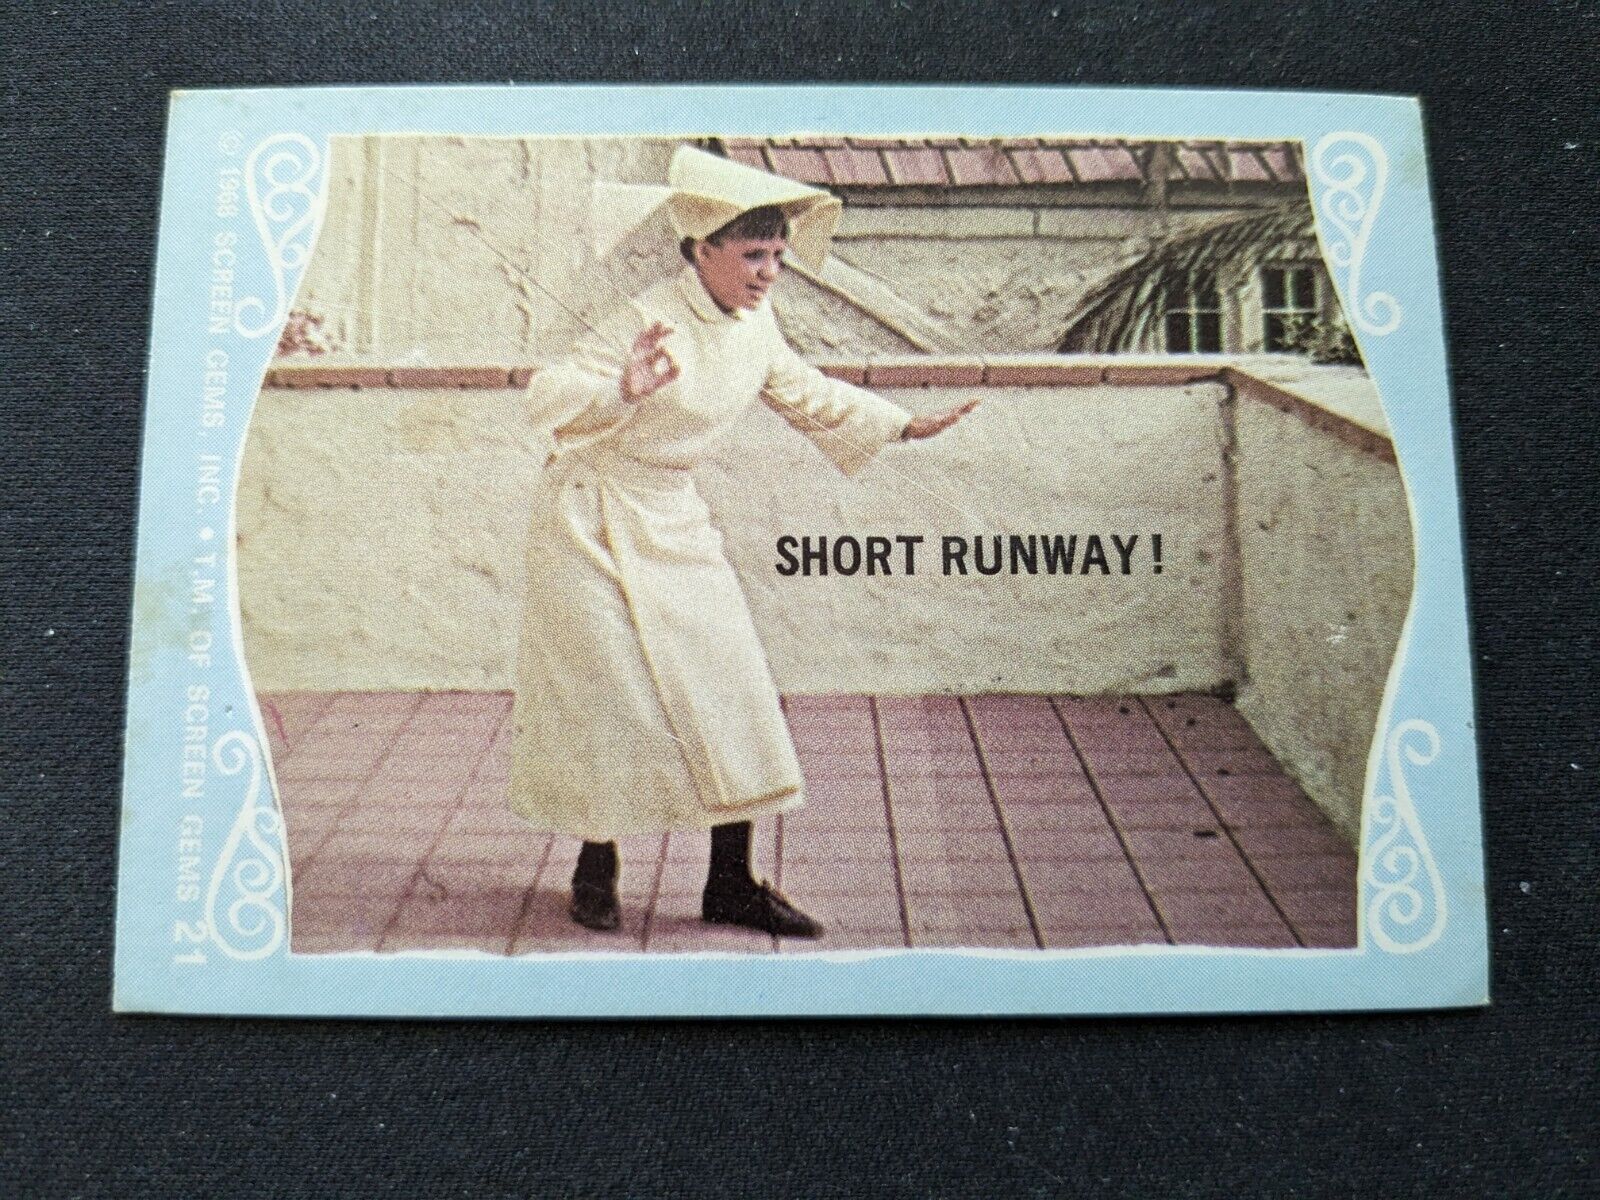 1968 Donruss The Flying Nun Card # 21 Short Runway (VG/EX)